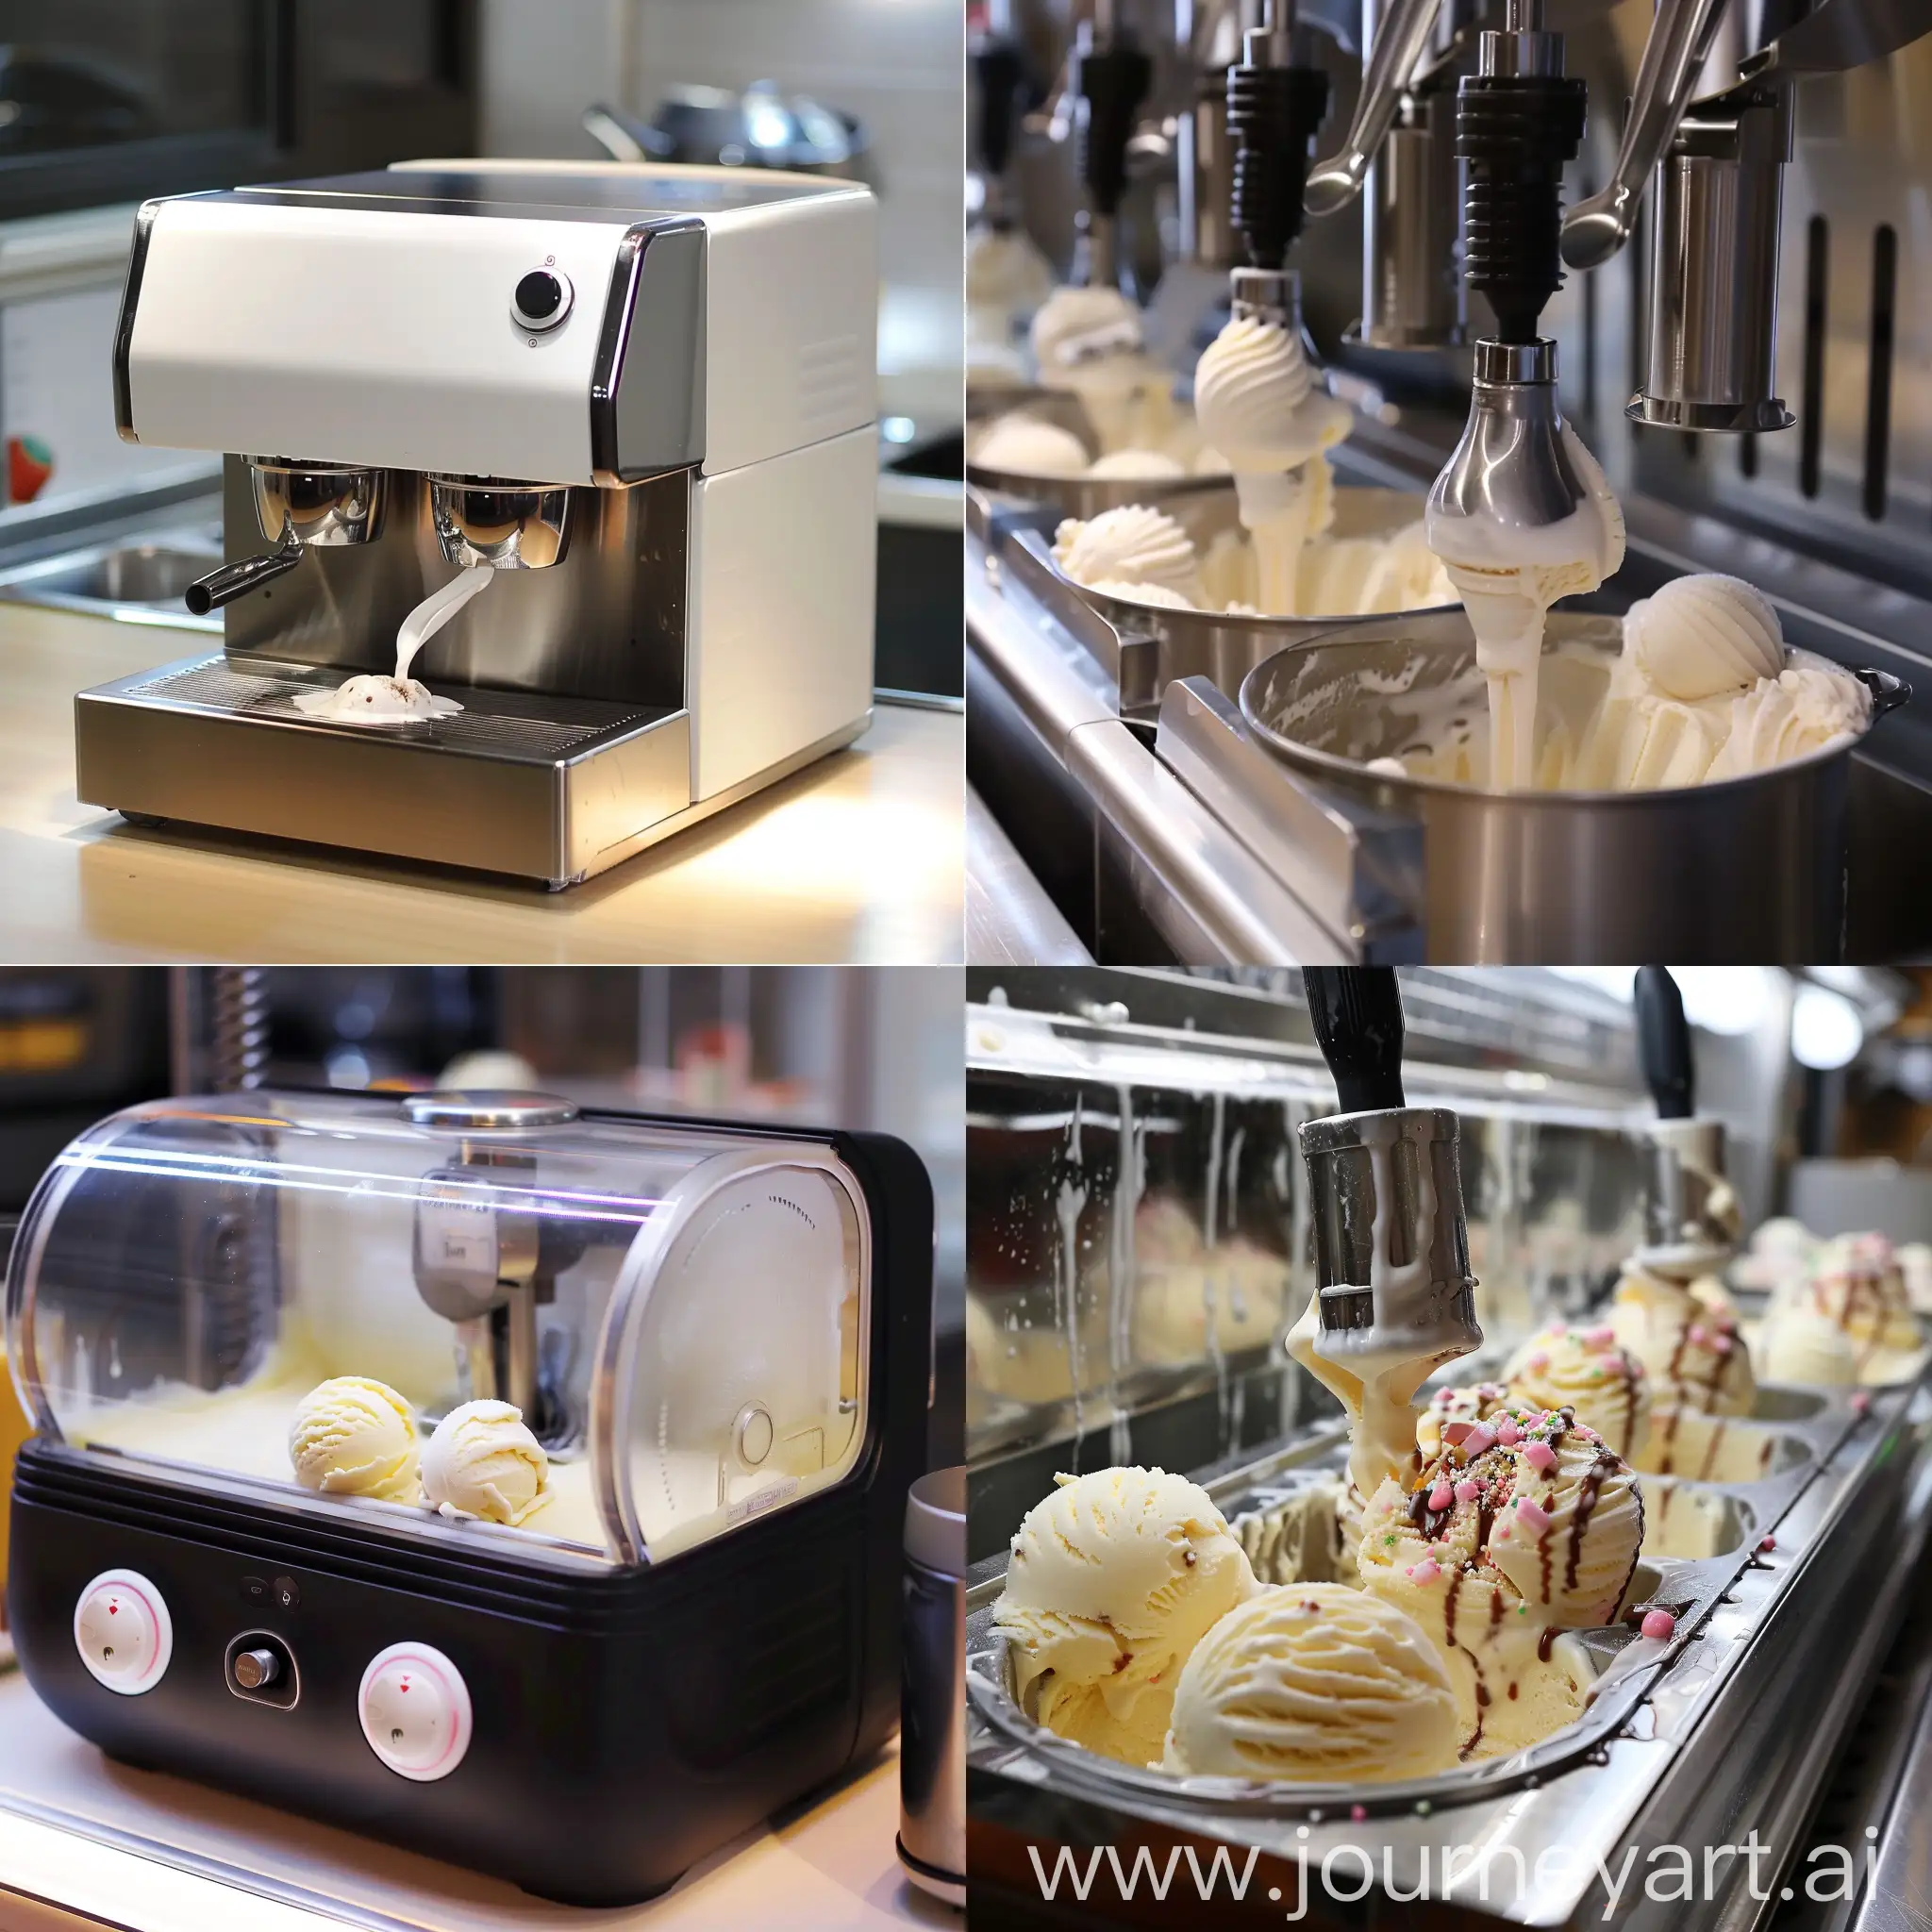 Ice cream making machine